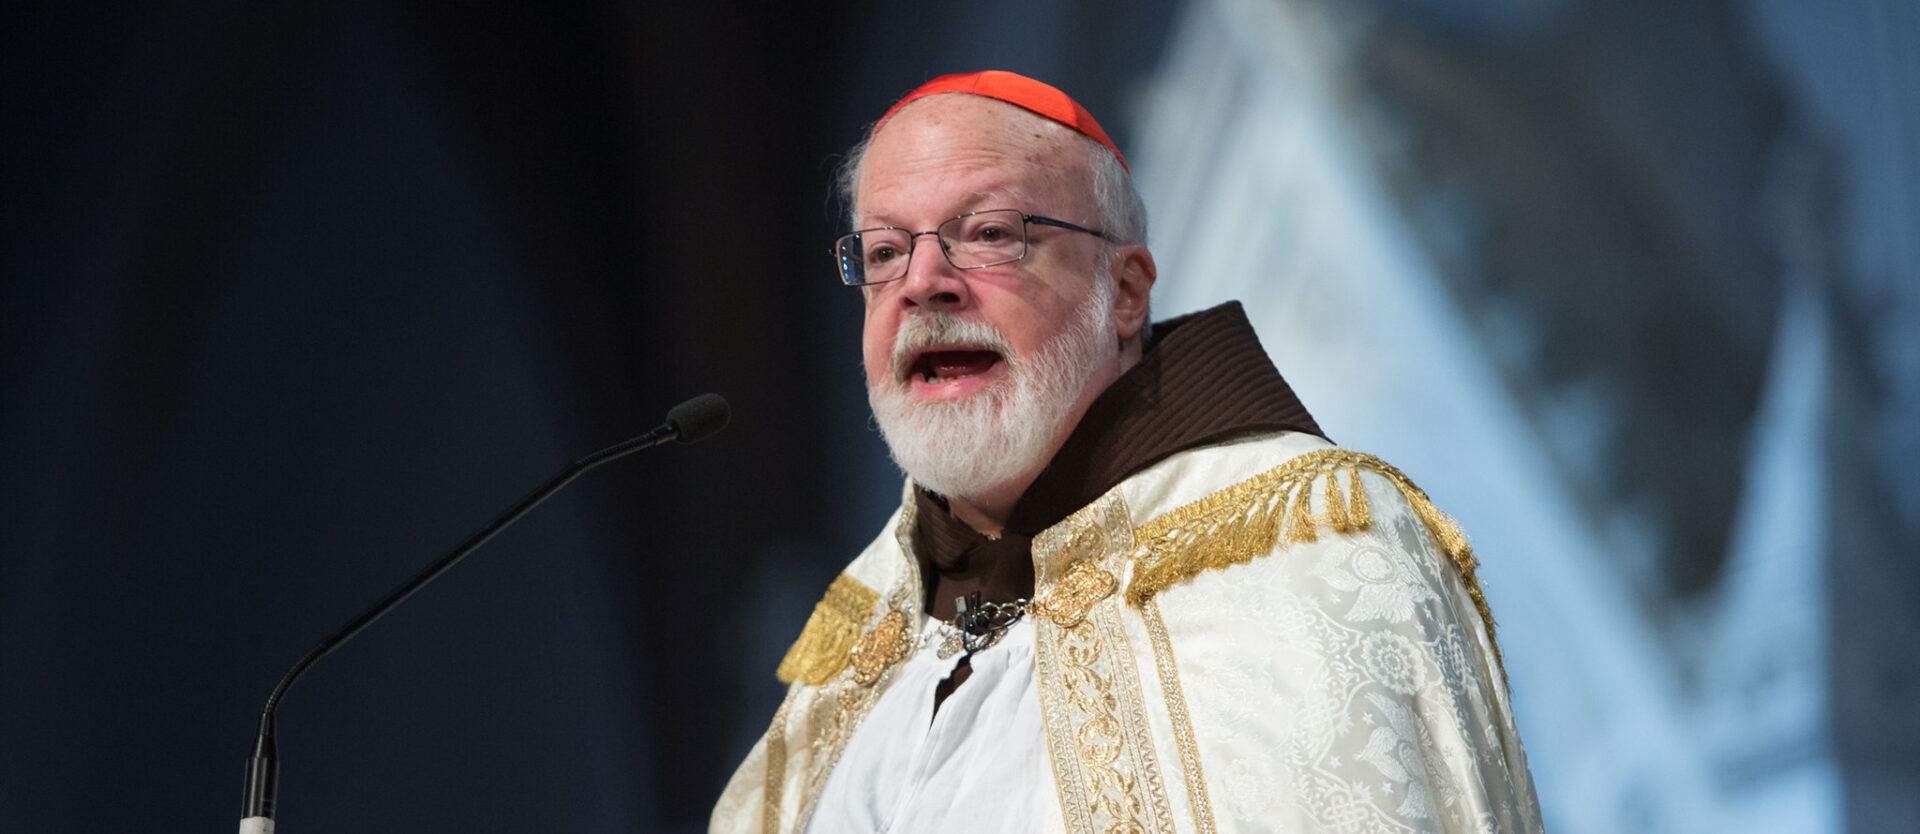 Le cardinal Sean O'Malley, archevêque de Boston, est accusé d'avoir été négligent dans une affaire d'abus | © Archdiocese of Boston/Flickr/CC BY-ND 2.0